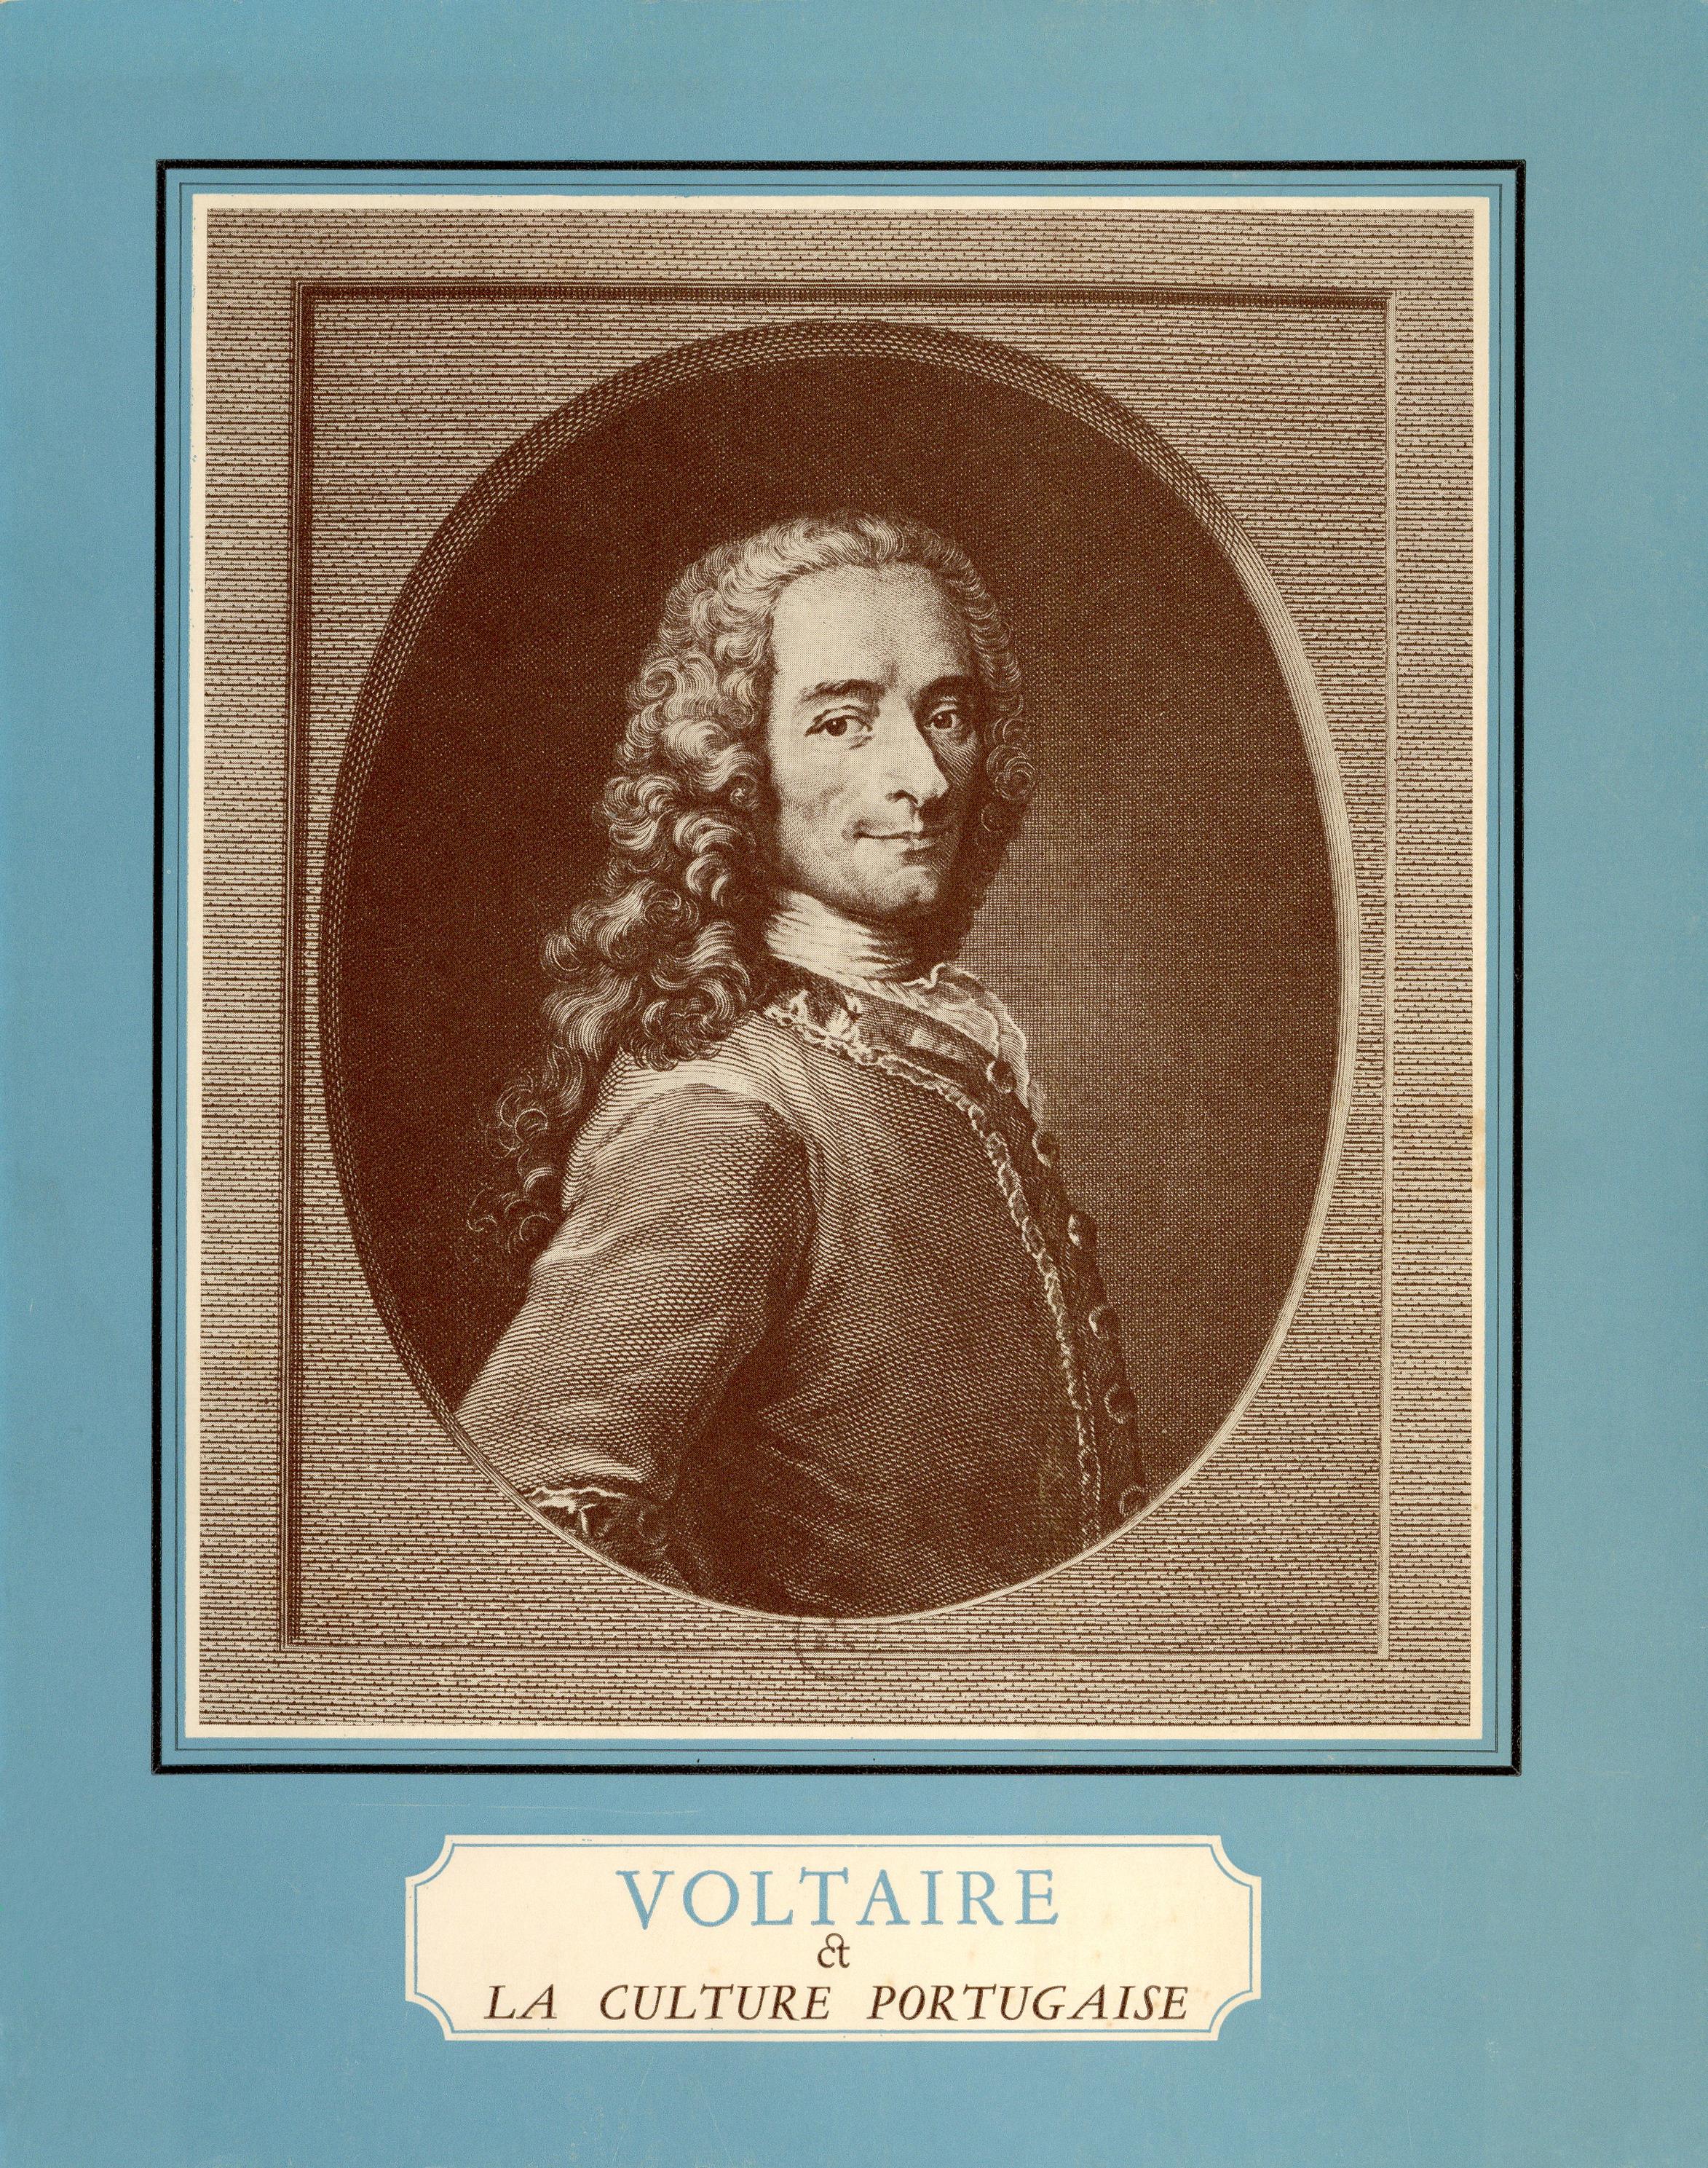 1969_Voltaire_&_La_Culture_Portugaise_catalogo_BI3564